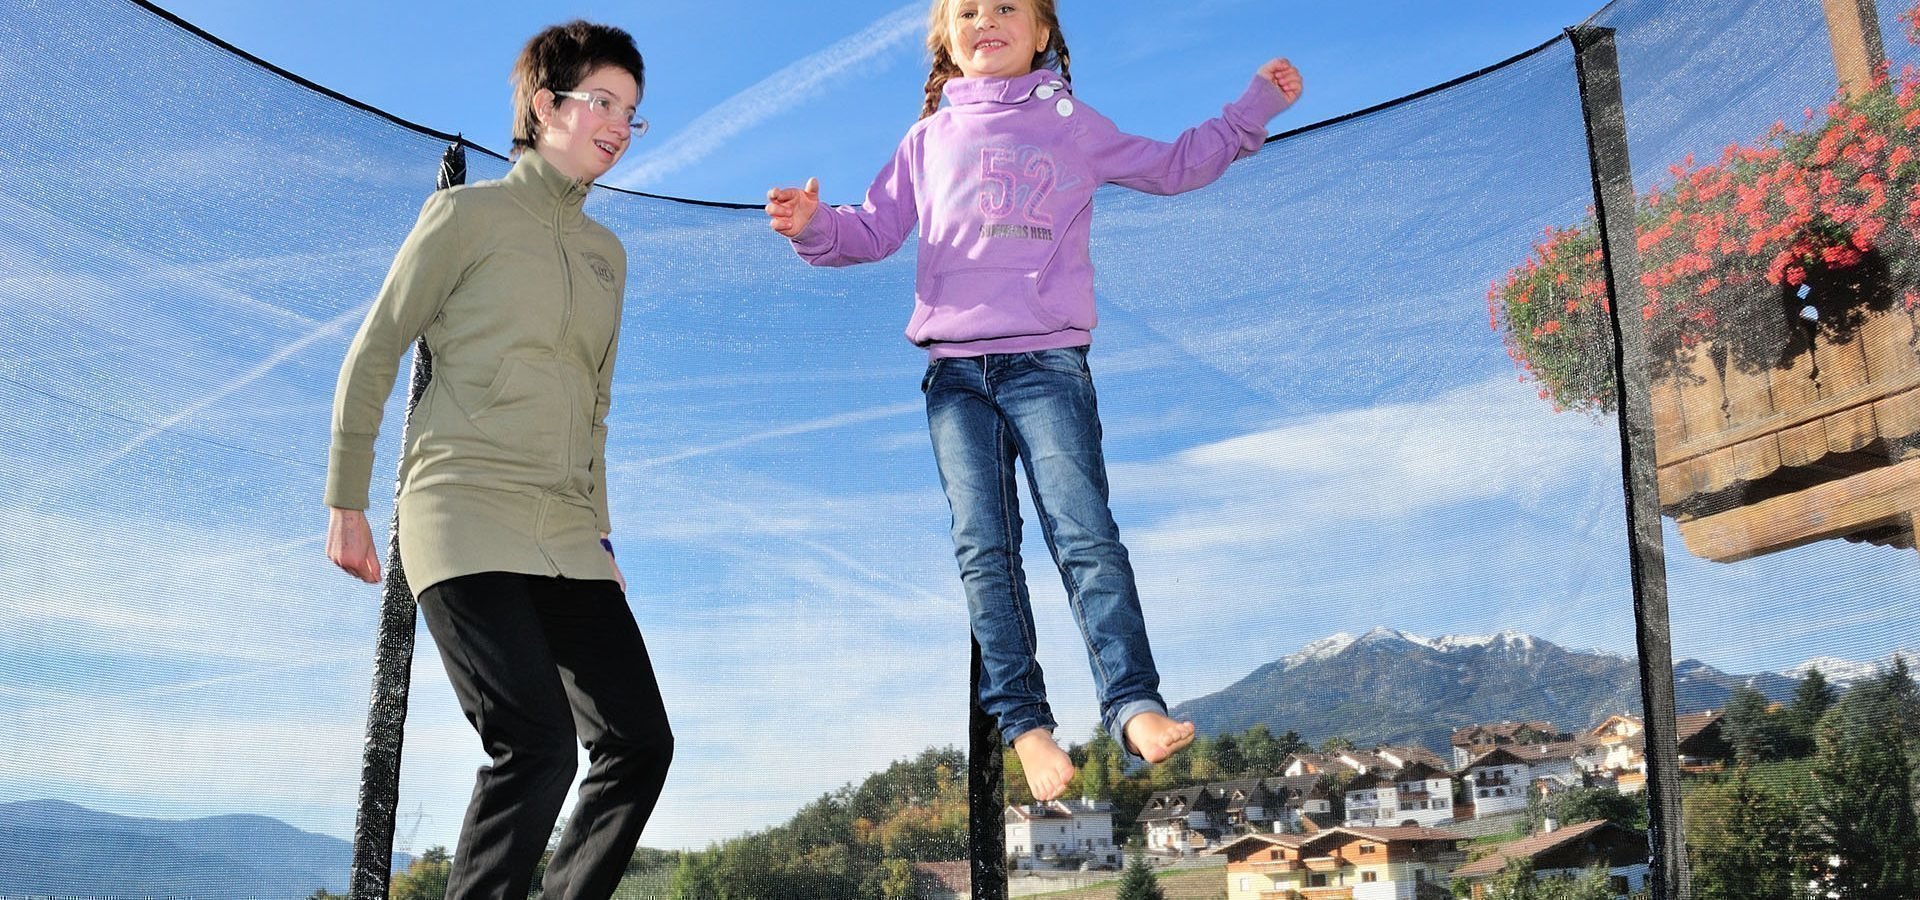 Familienurlaub auf dem Bauernhof in Südtirol